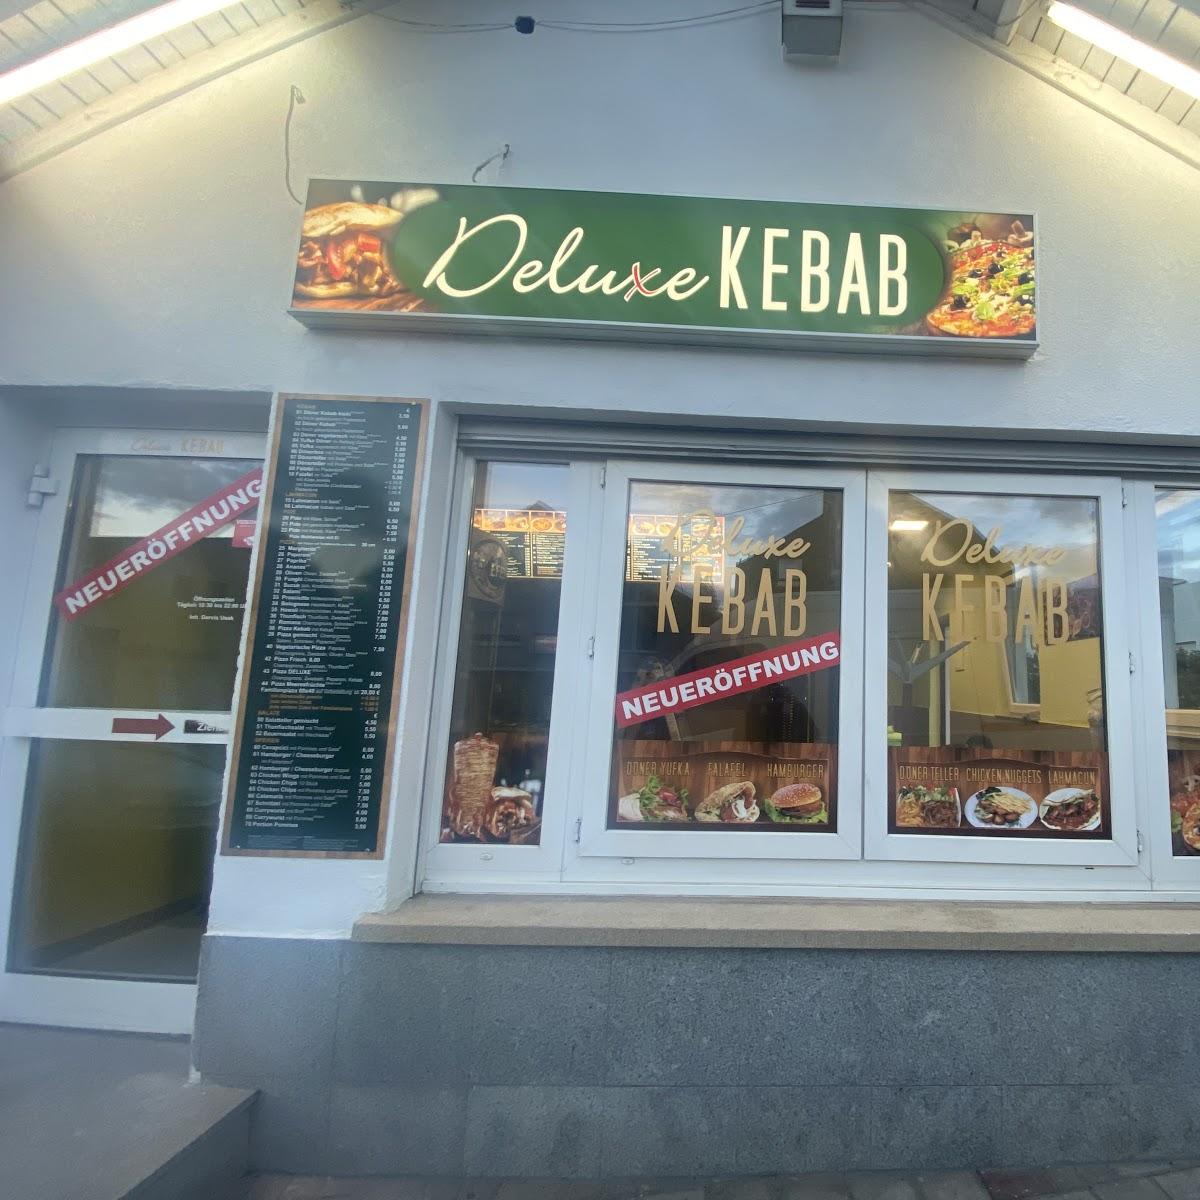 Restaurant "Deluxe Kebab Deluxe" in Bisingen